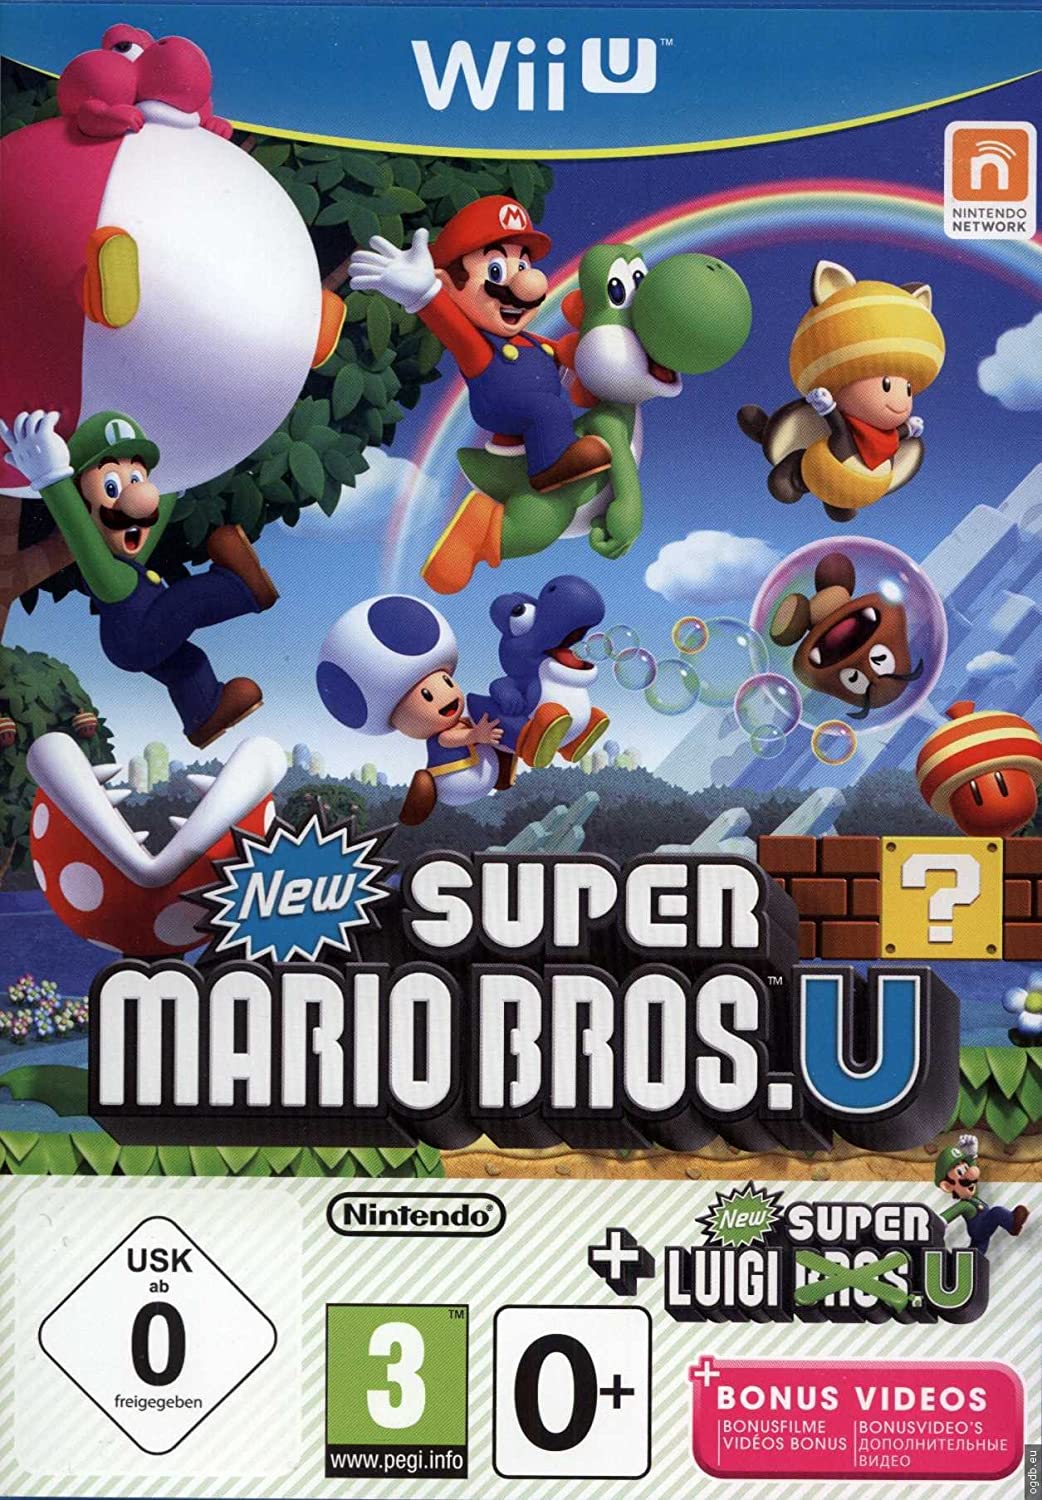 [RESOLU][ESTIM][AIDE] Mario Bros. U + Luigi U (pour achat) URGENT !!! 81Lsna5cKXL._SL1500_